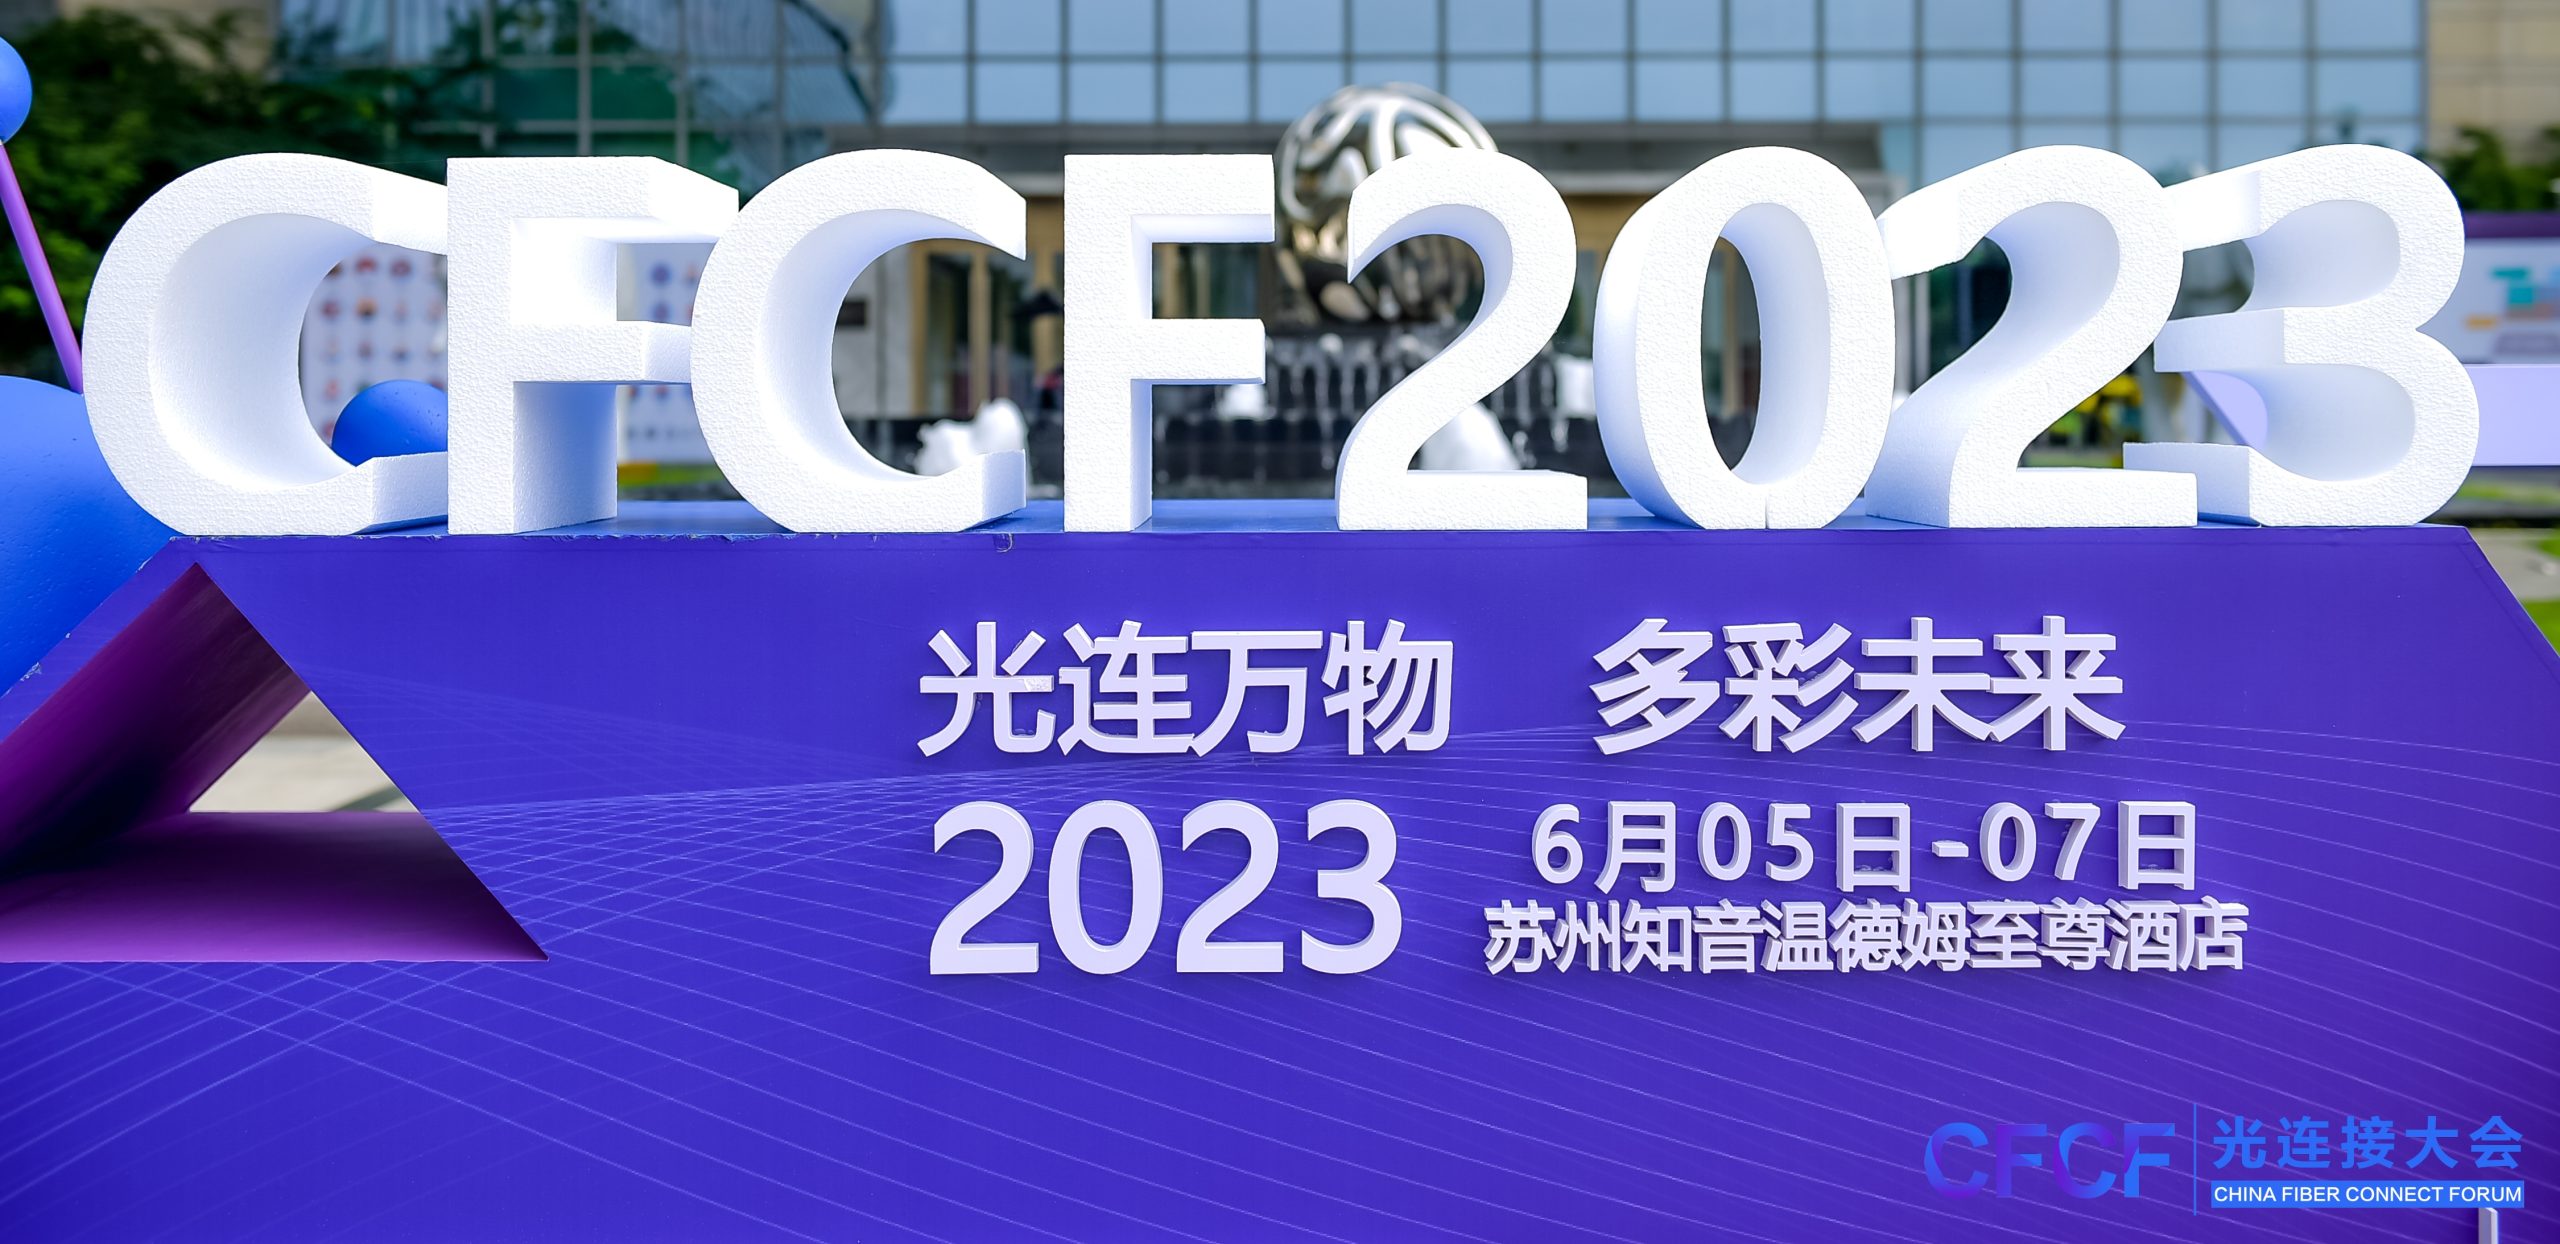 国瑞升圆满参加CFCF大会 2023